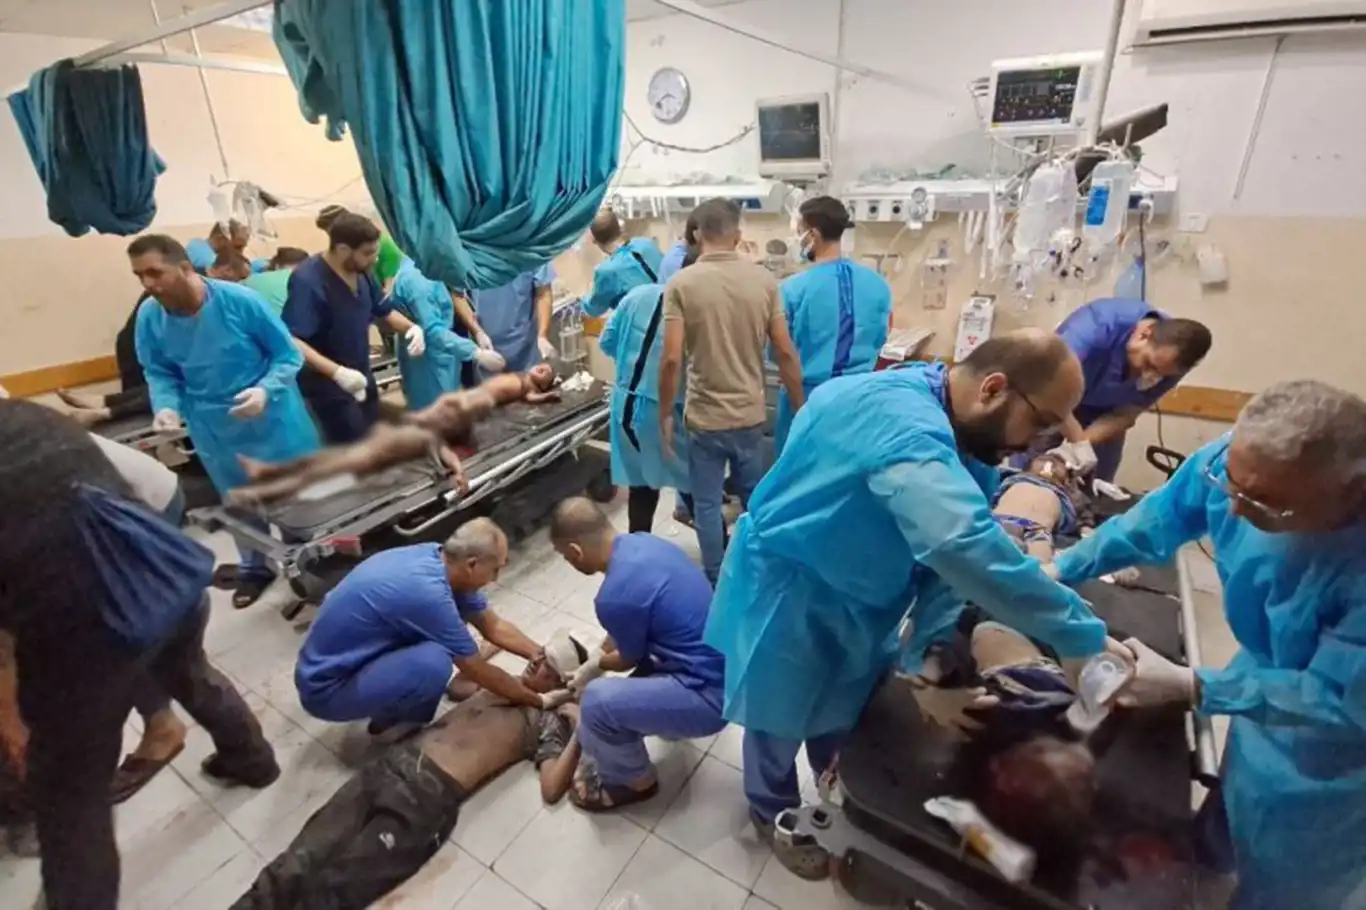 Gazze Sağlık Bakanlığı, hastanelerin biten yakıtı nedeniyle acil yardım çağrısında bulundu